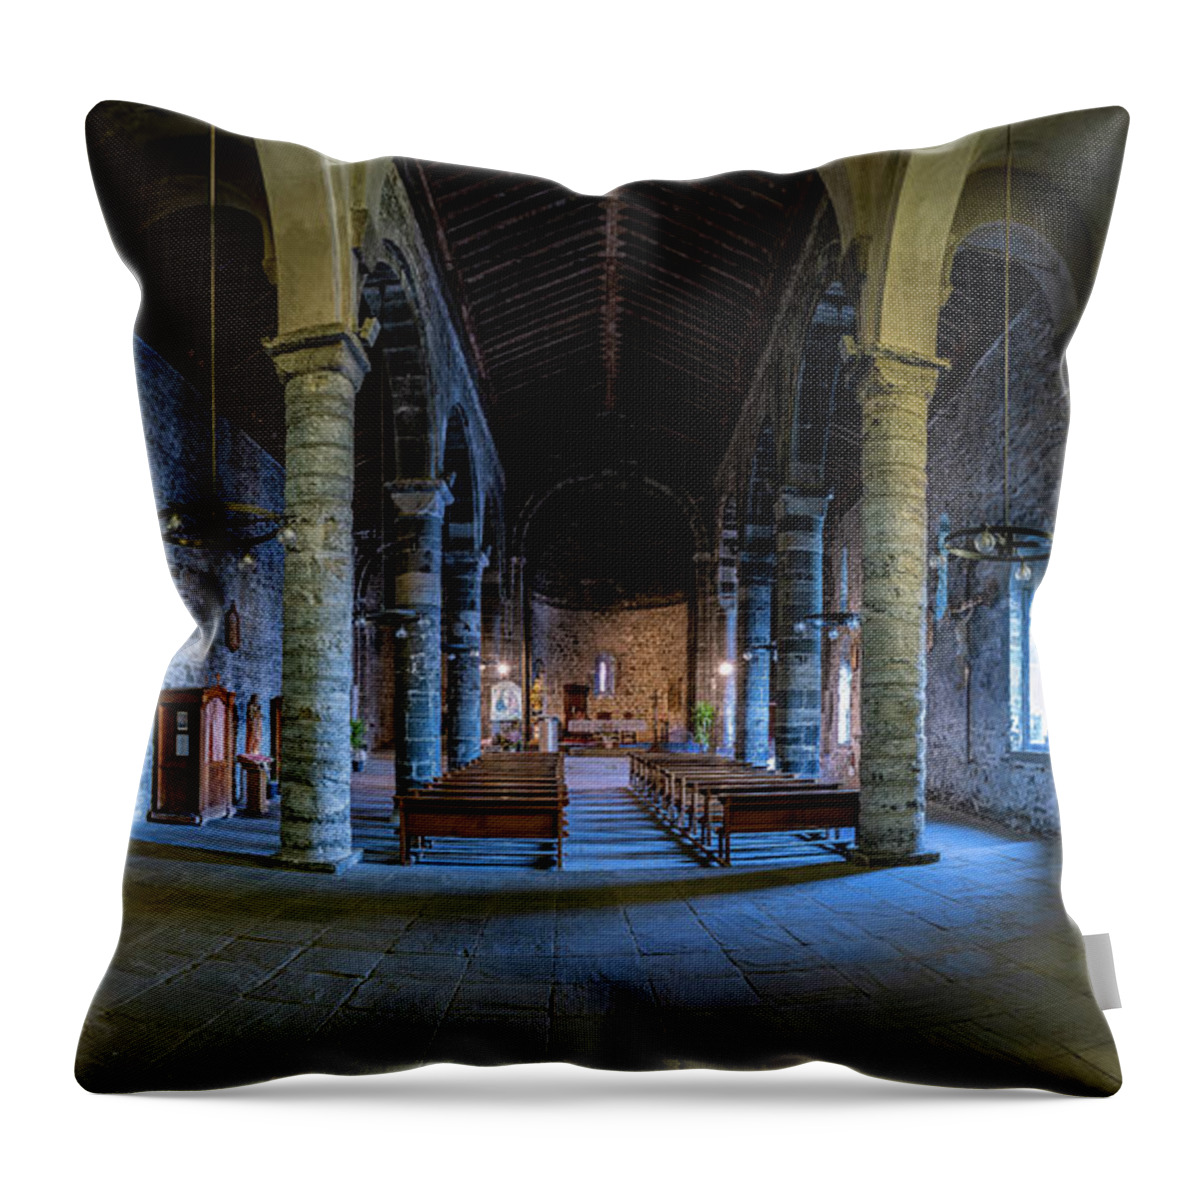 Cinque Terre Throw Pillow featuring the photograph Santa Margherita di Antiochia Church by David Downs